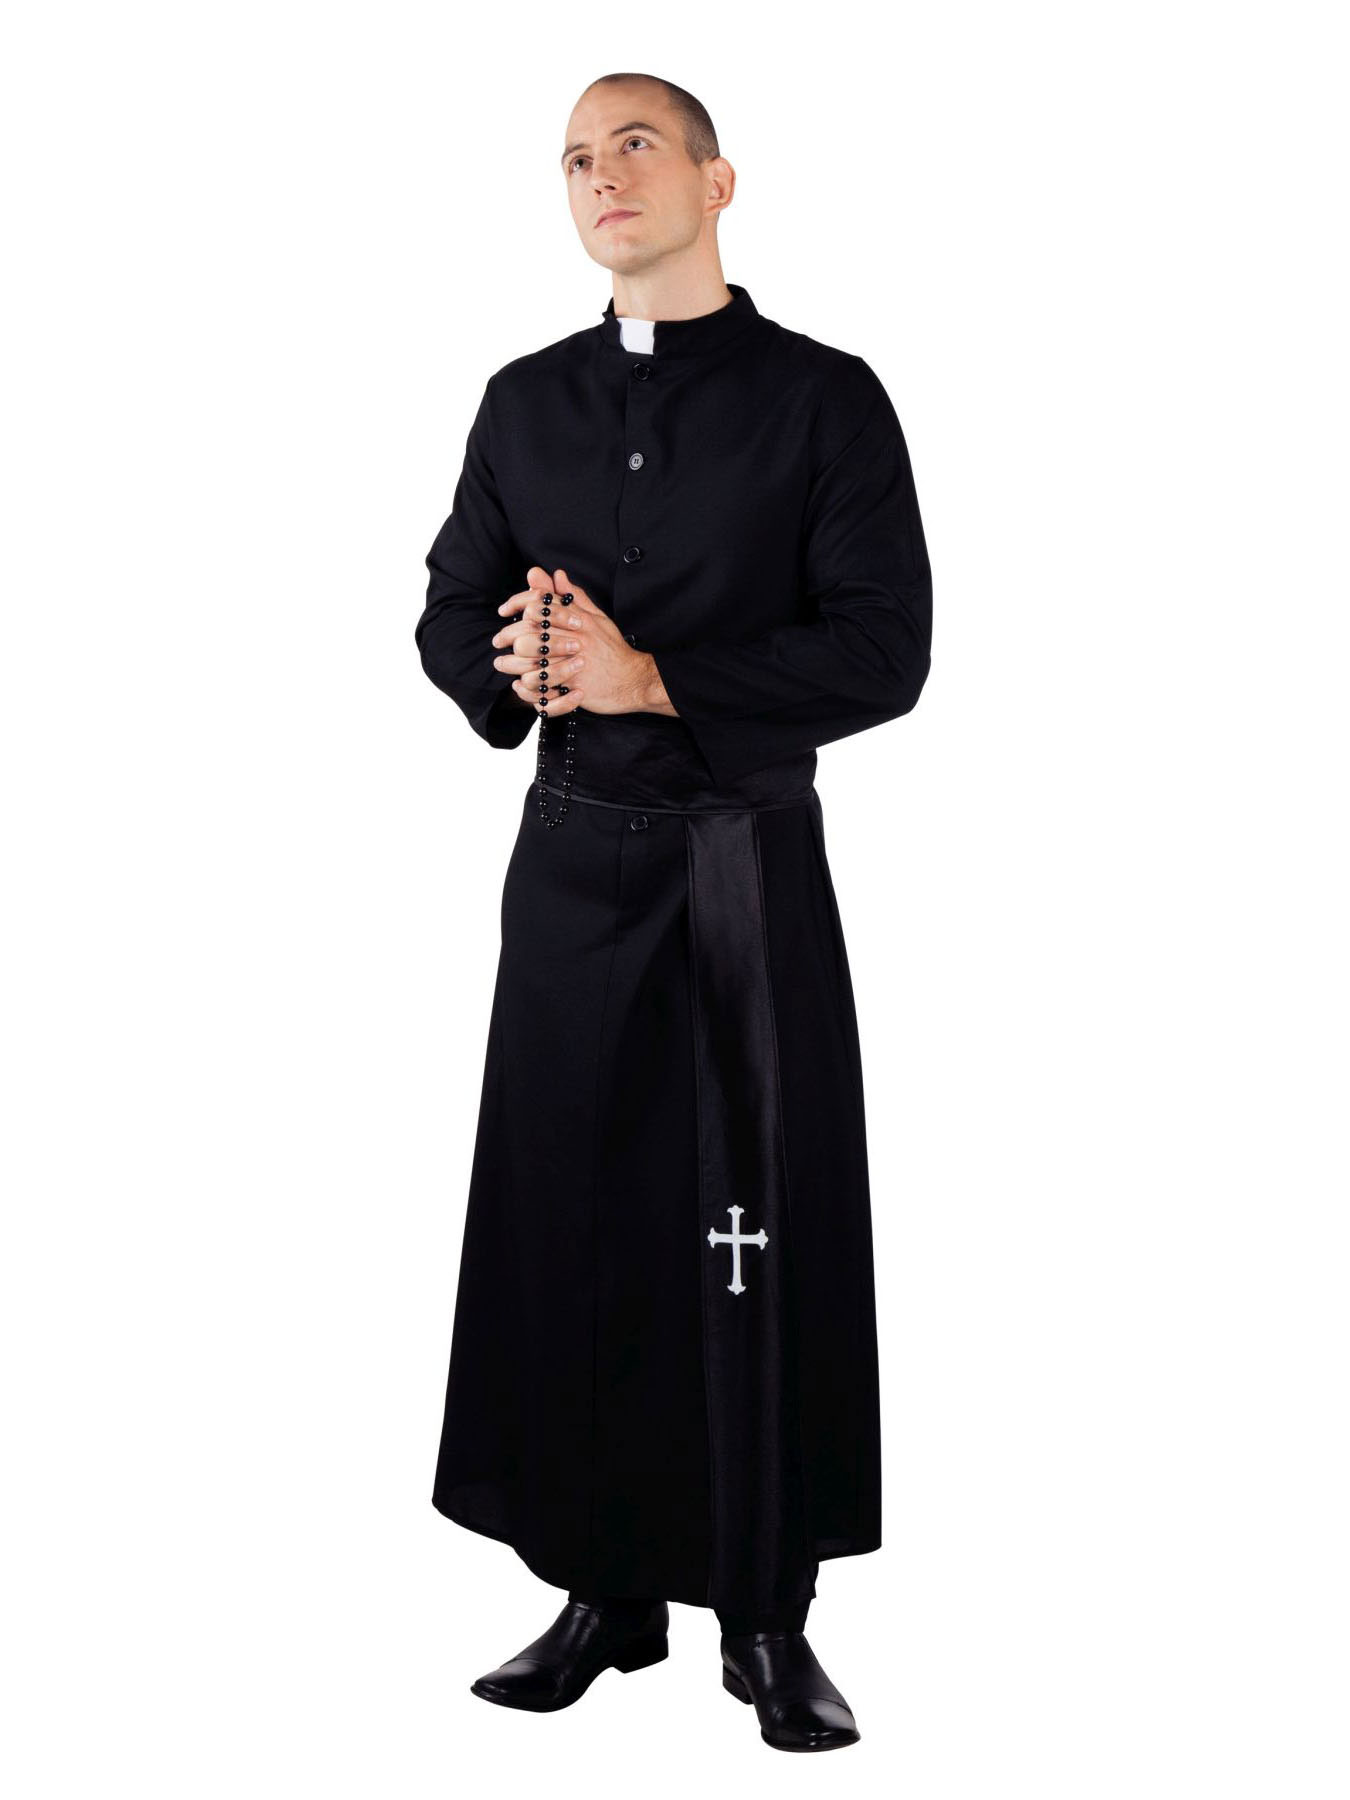 Одежда священнослужителей